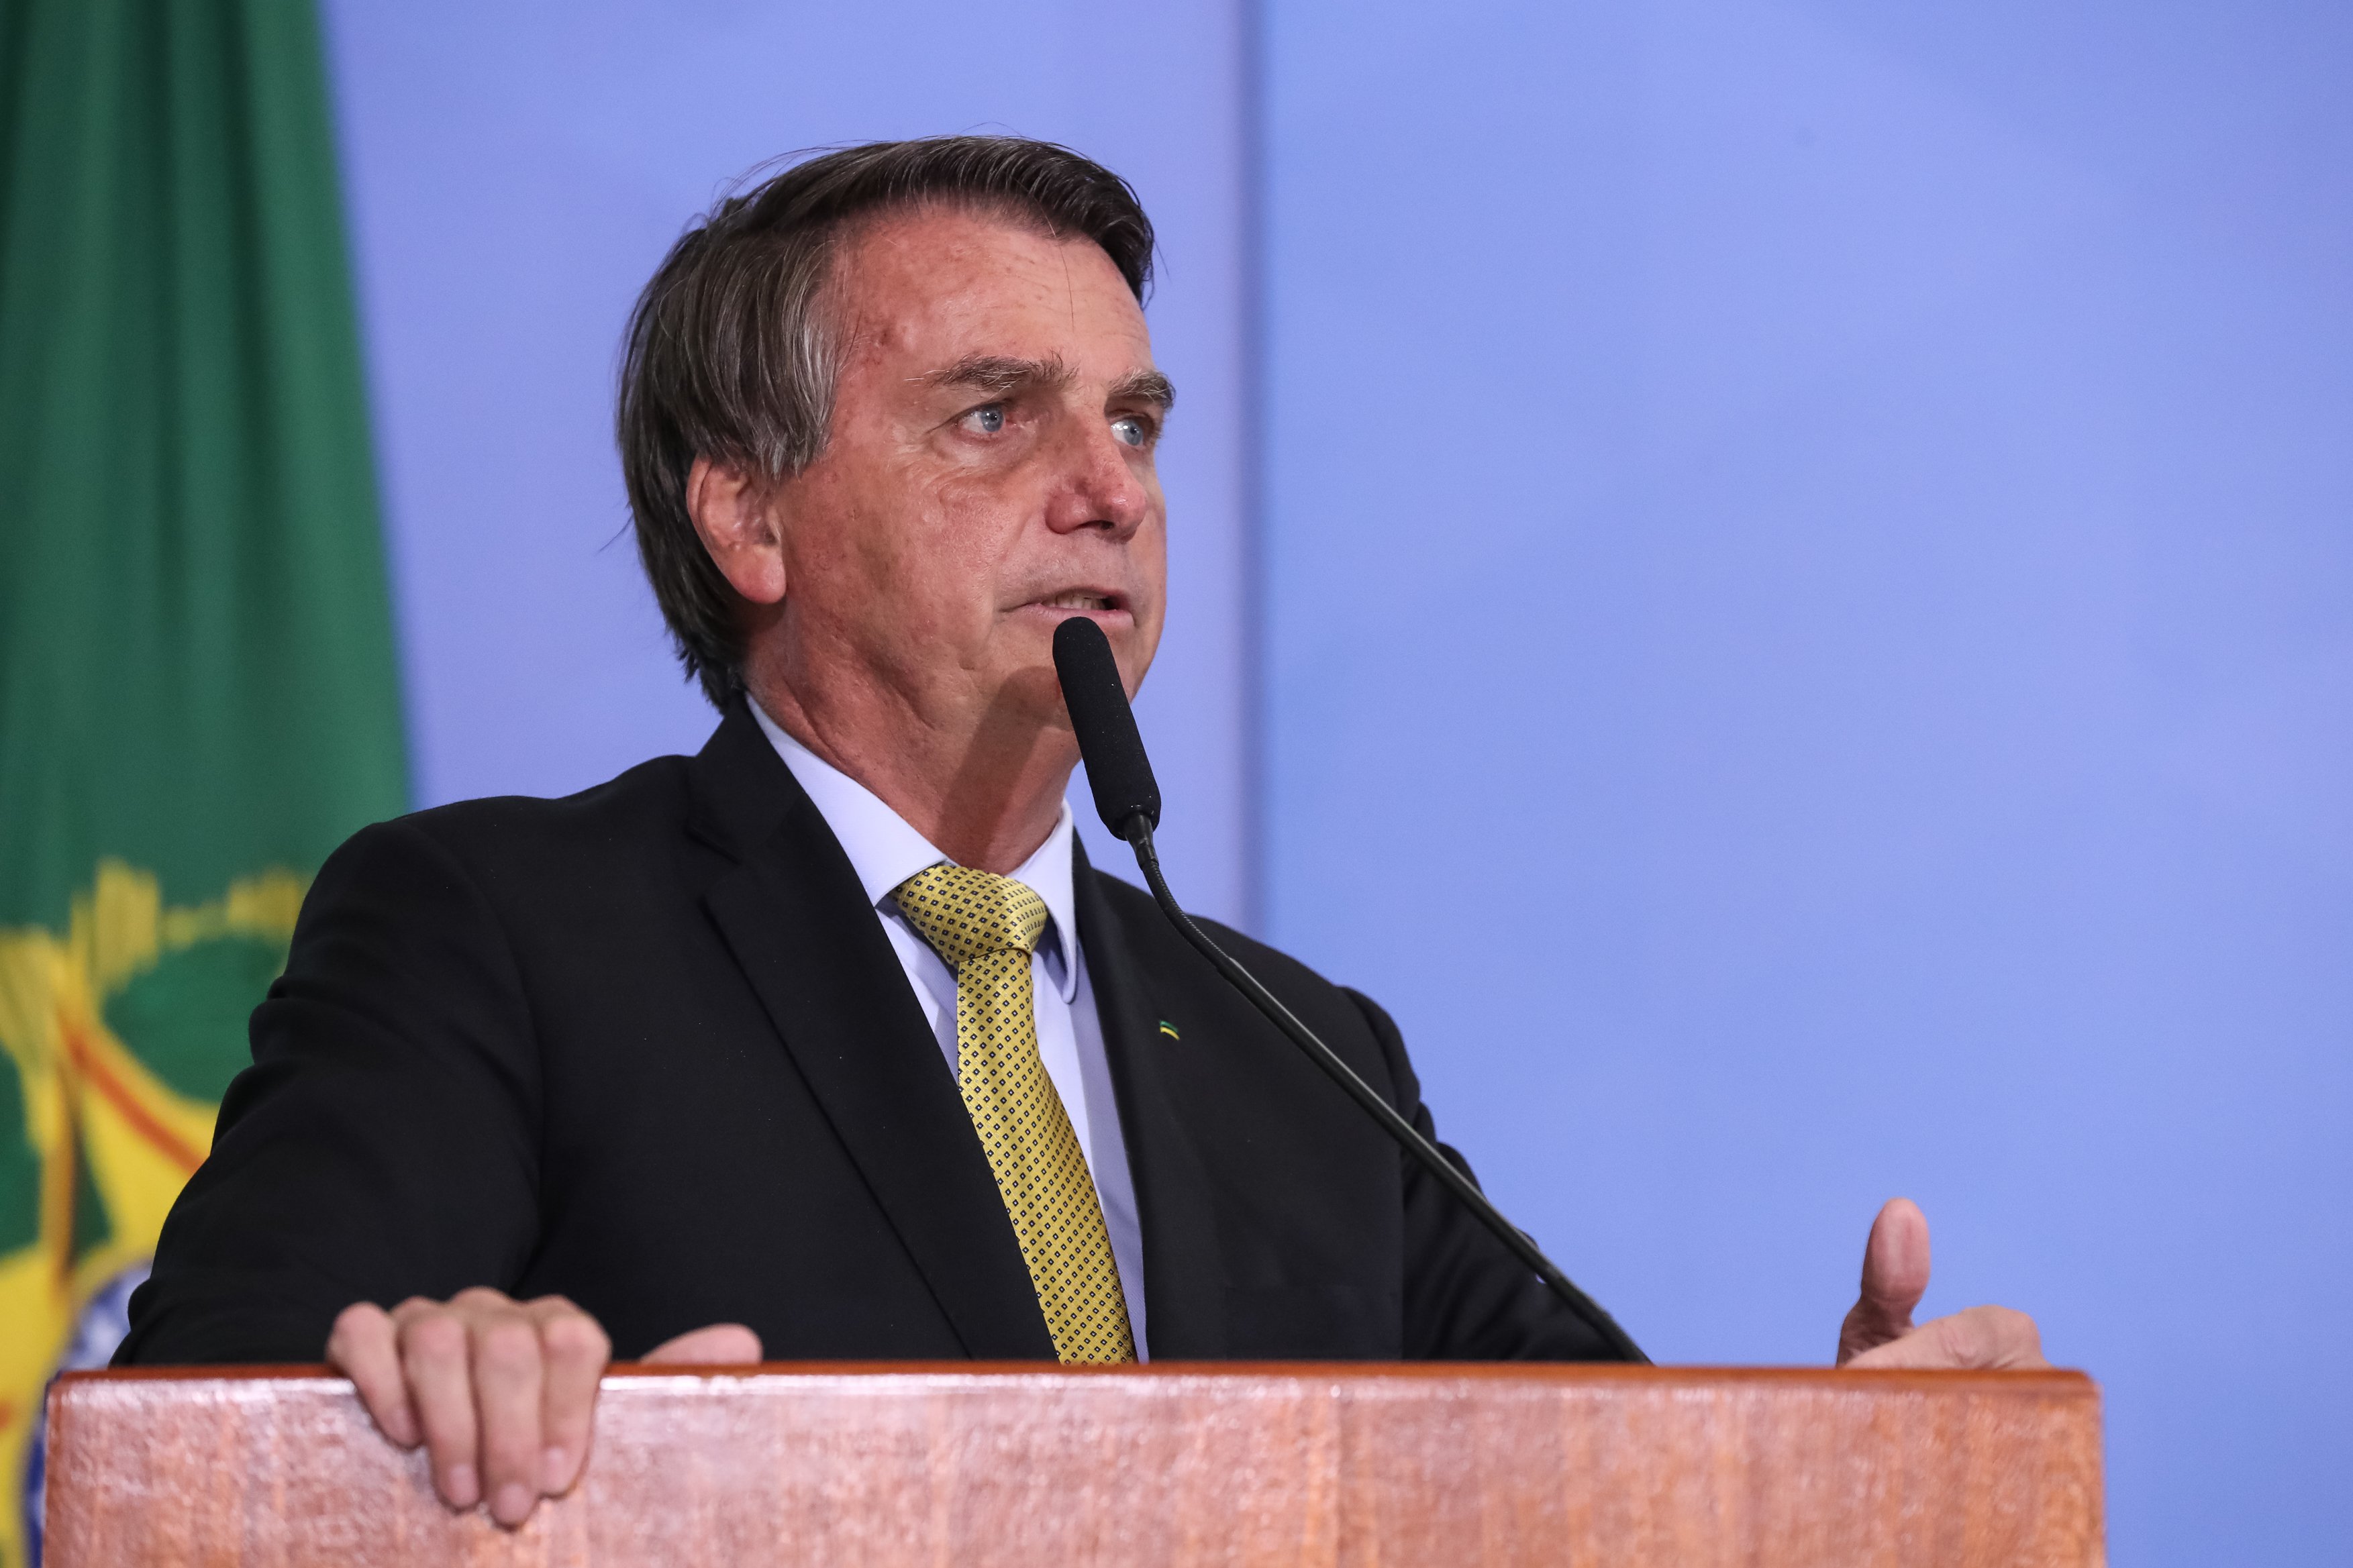 Após ter brigado com o comando do PSL, Bolsonaro está sem partido desde 2019. O presidente negociou a entrada em vários outros partidos, dentre eles o PRTB